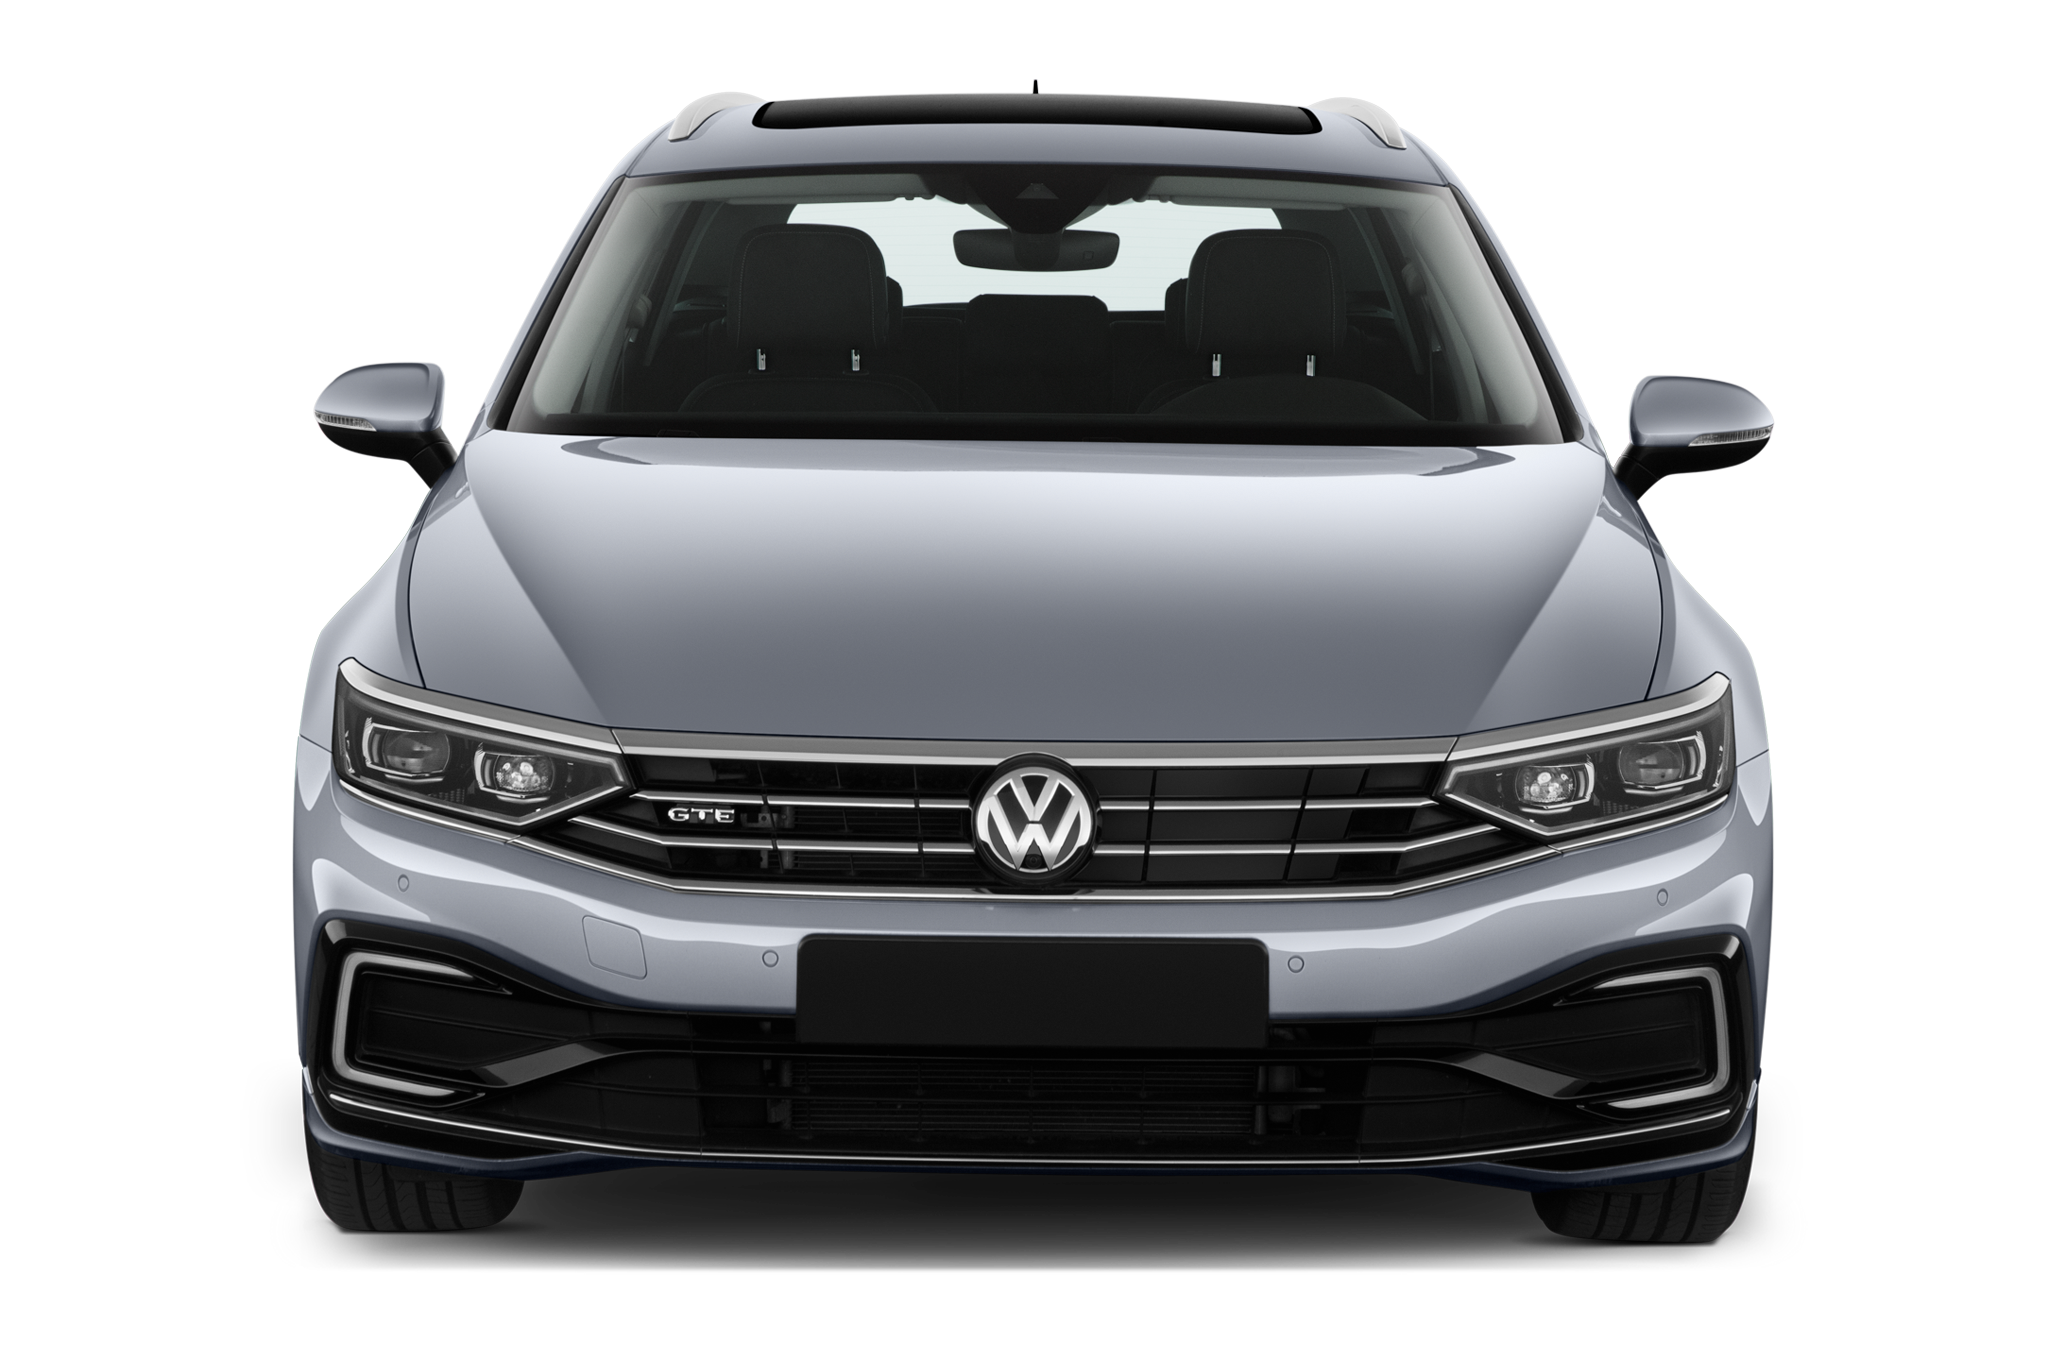 Volkswagen Passat (Baujahr 2020) GTE 5 Türen Frontansicht